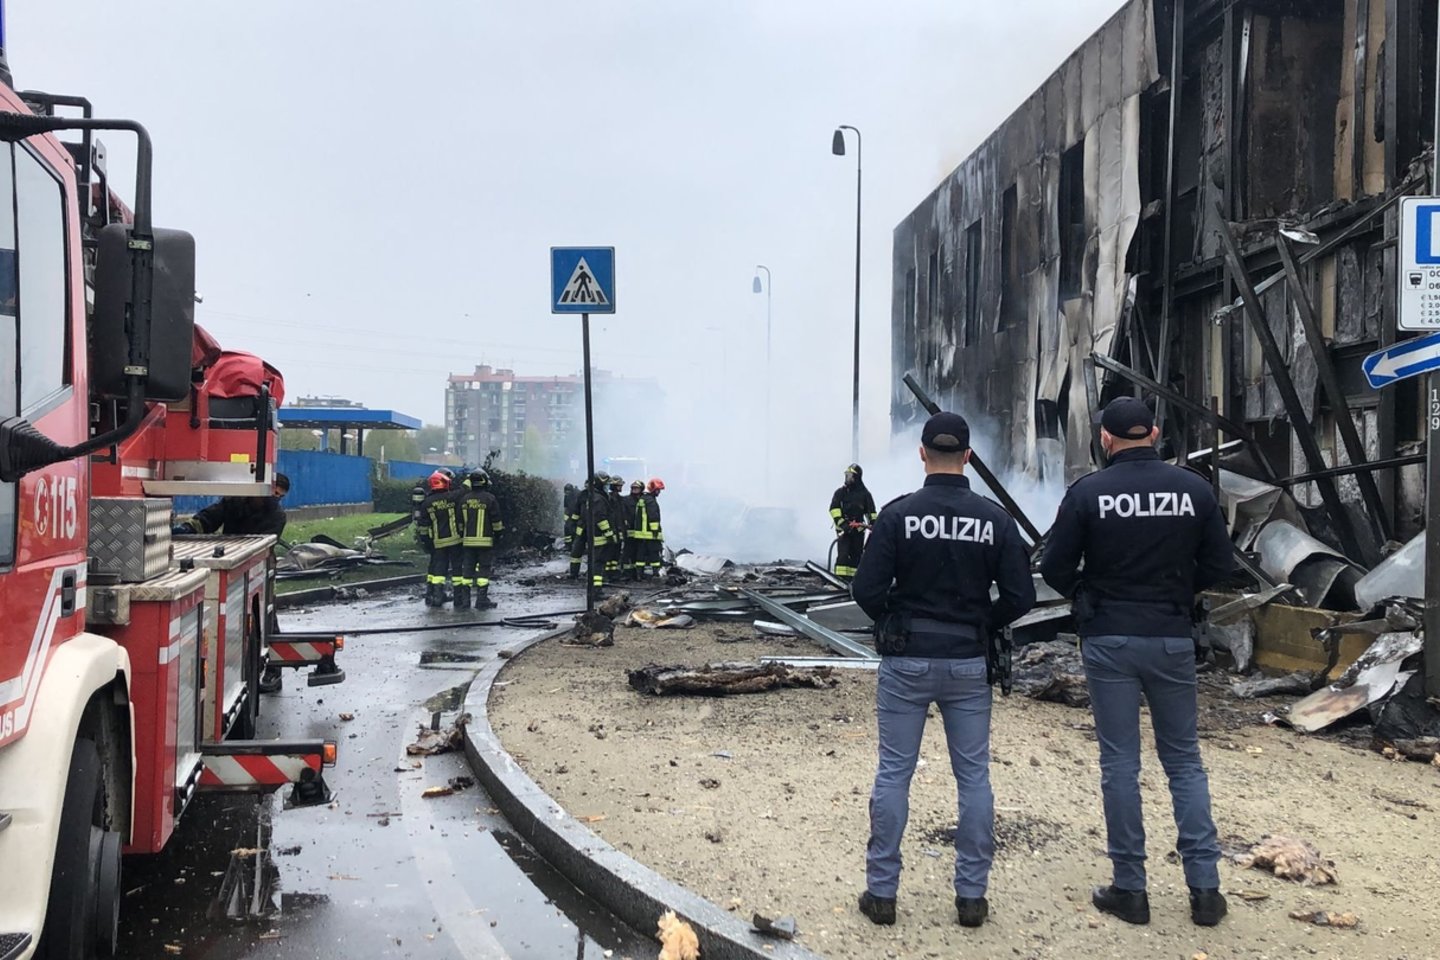  Milane nukritus nedideliam lėktuvui, žuvo visi aštuoni juo skridusieji.<br> AFP/Scanpix nuotr.